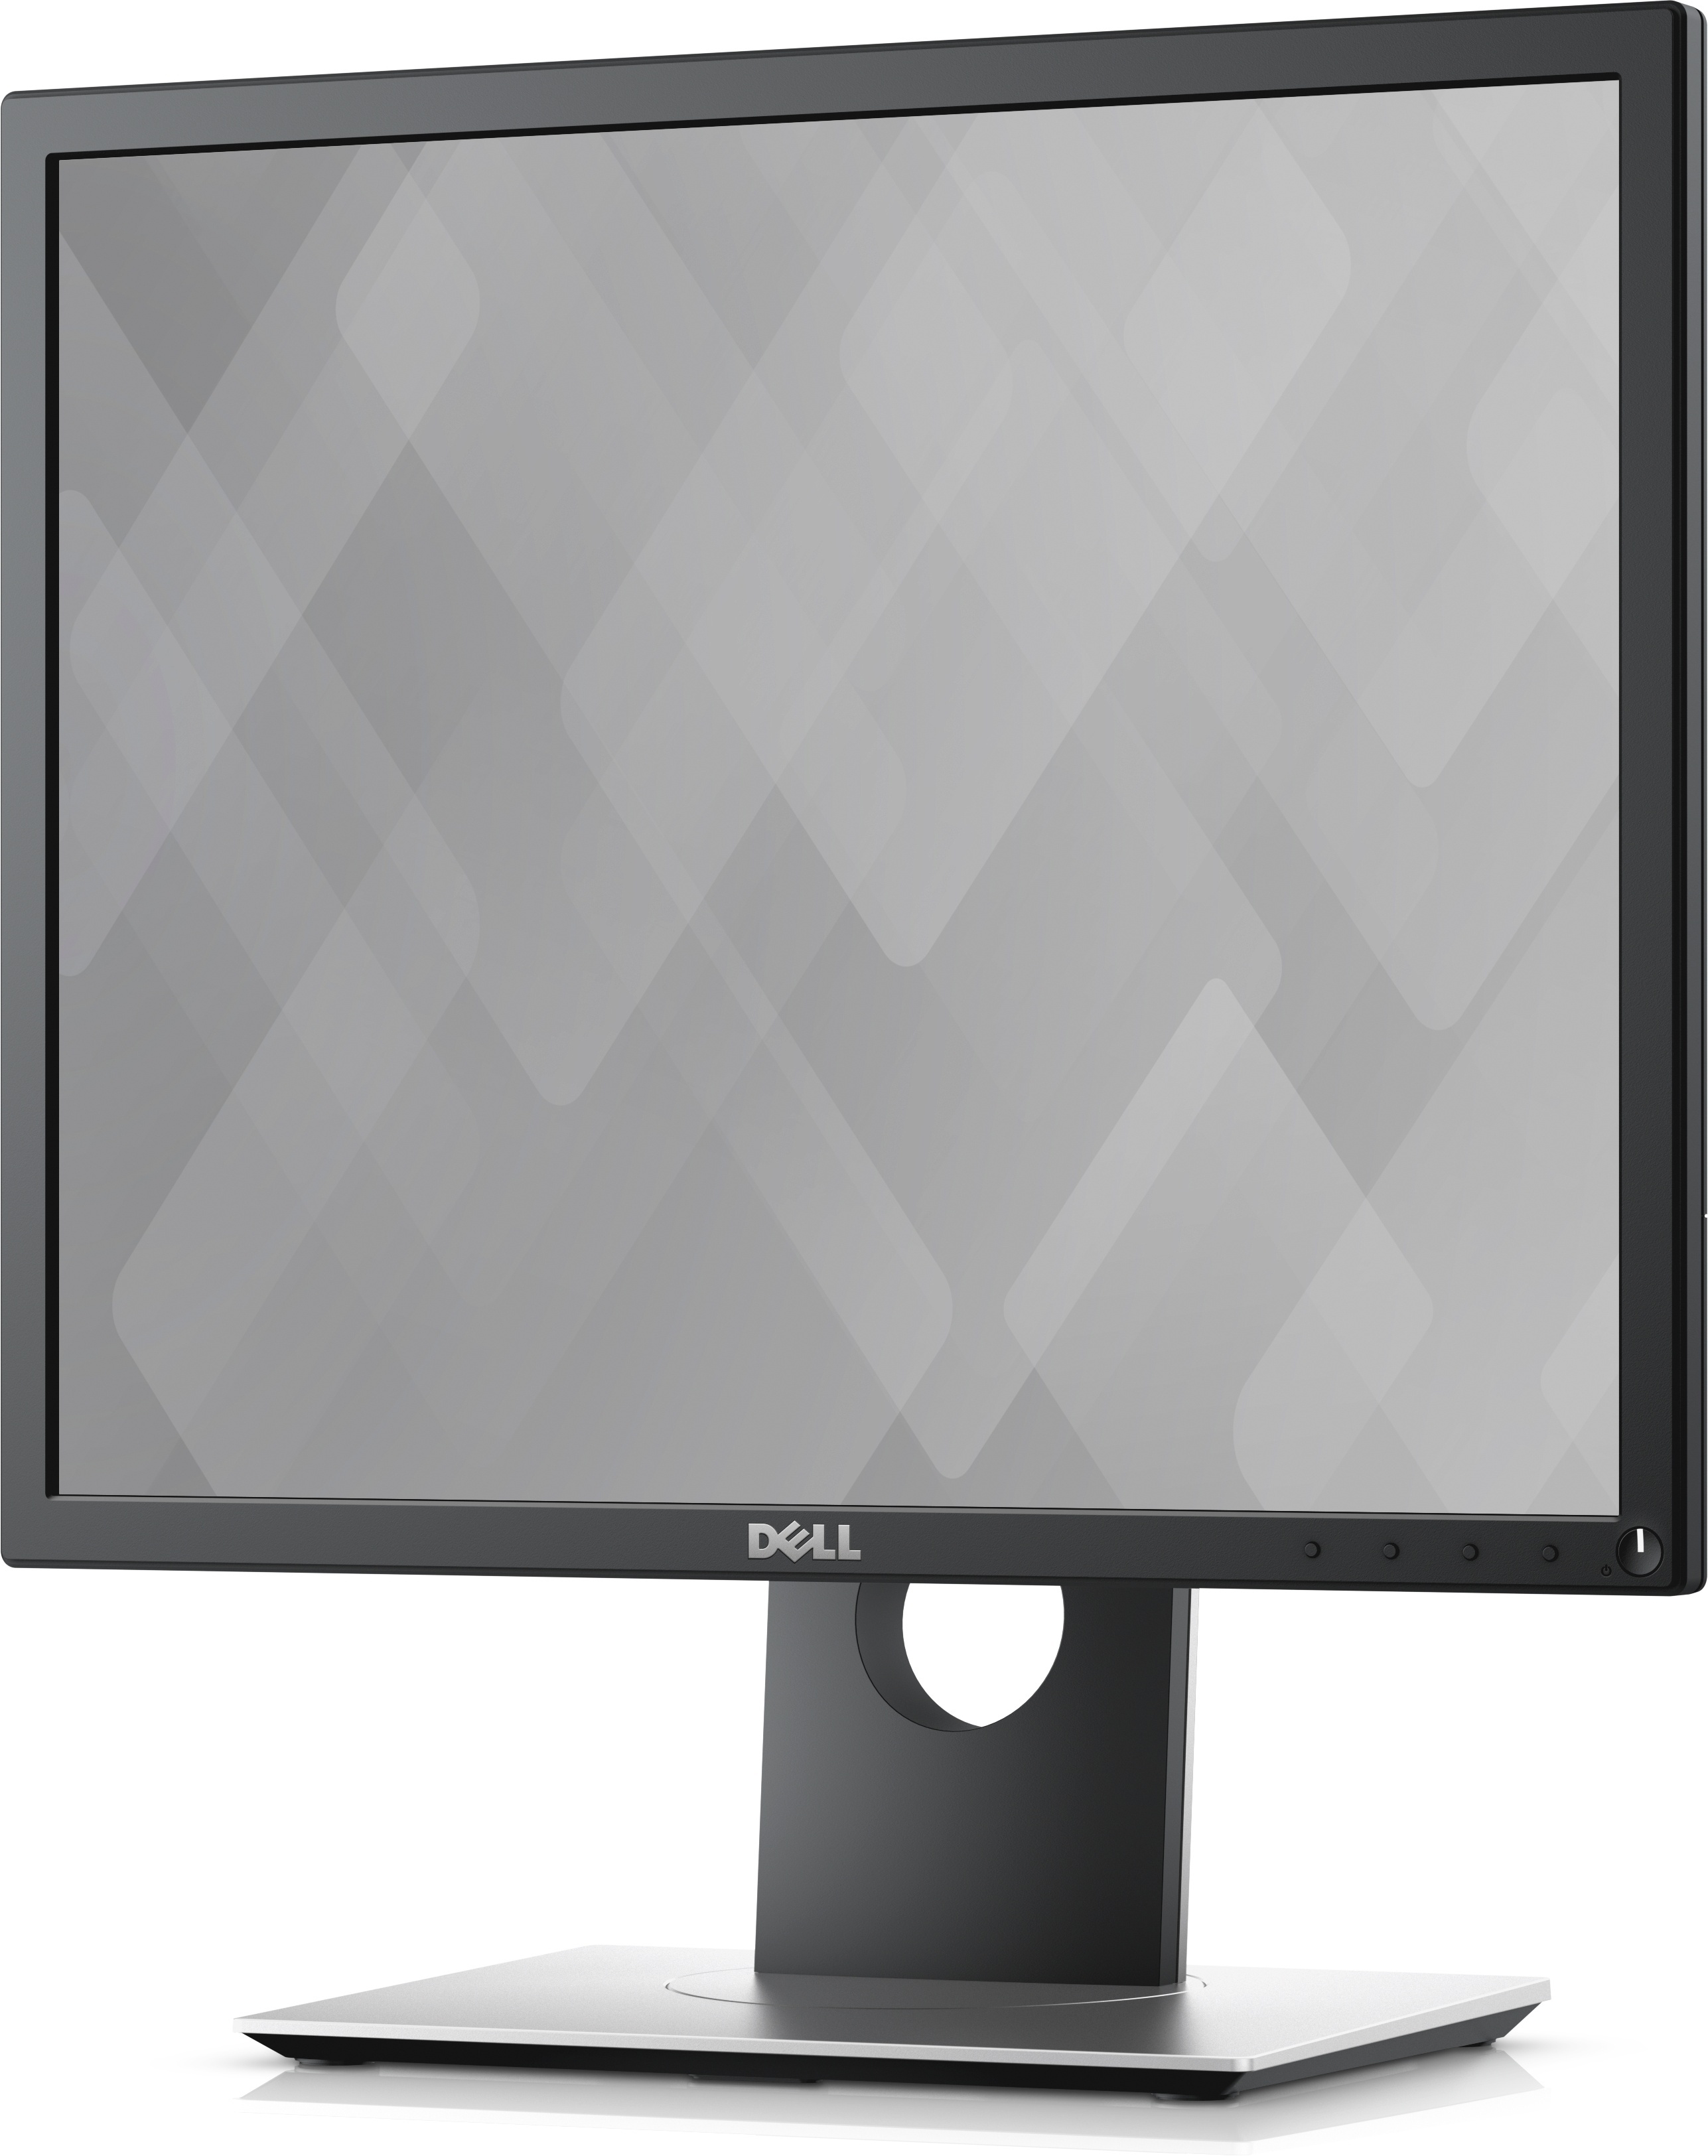 Dell P1917S 19" Monitor